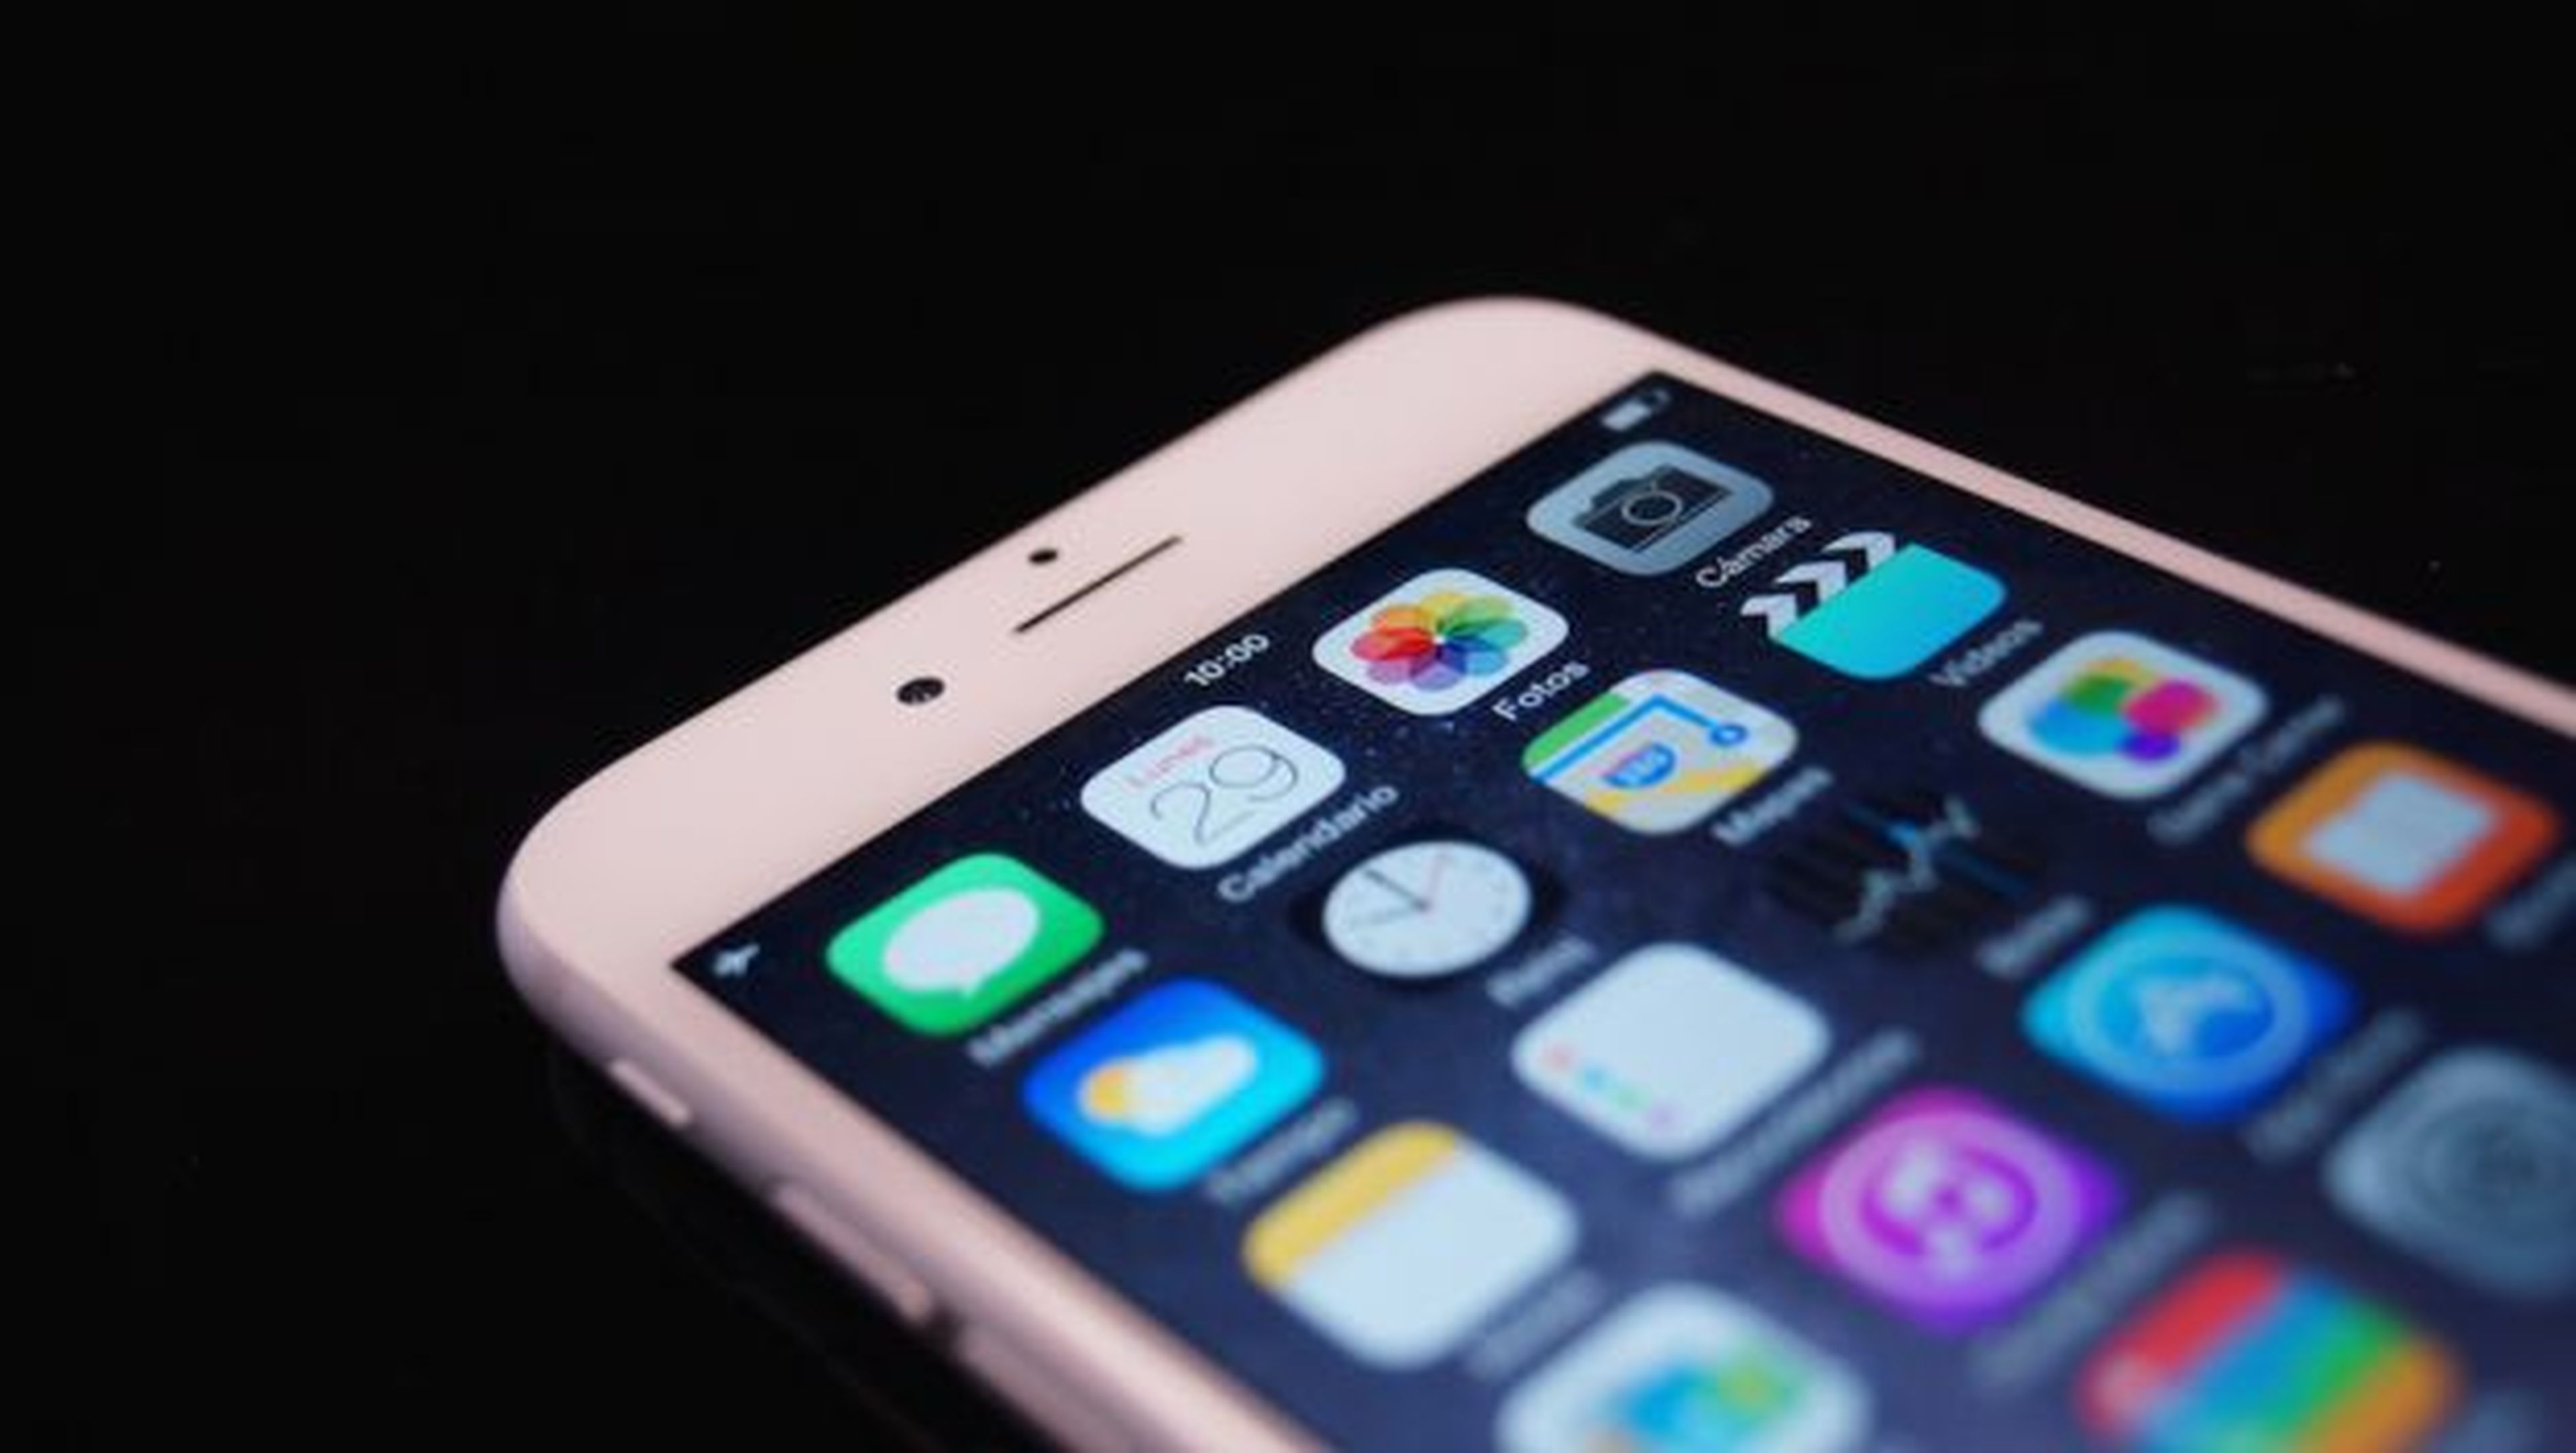 El iPhone 6 es un plagio de un móvil chino, dicta un juzgado